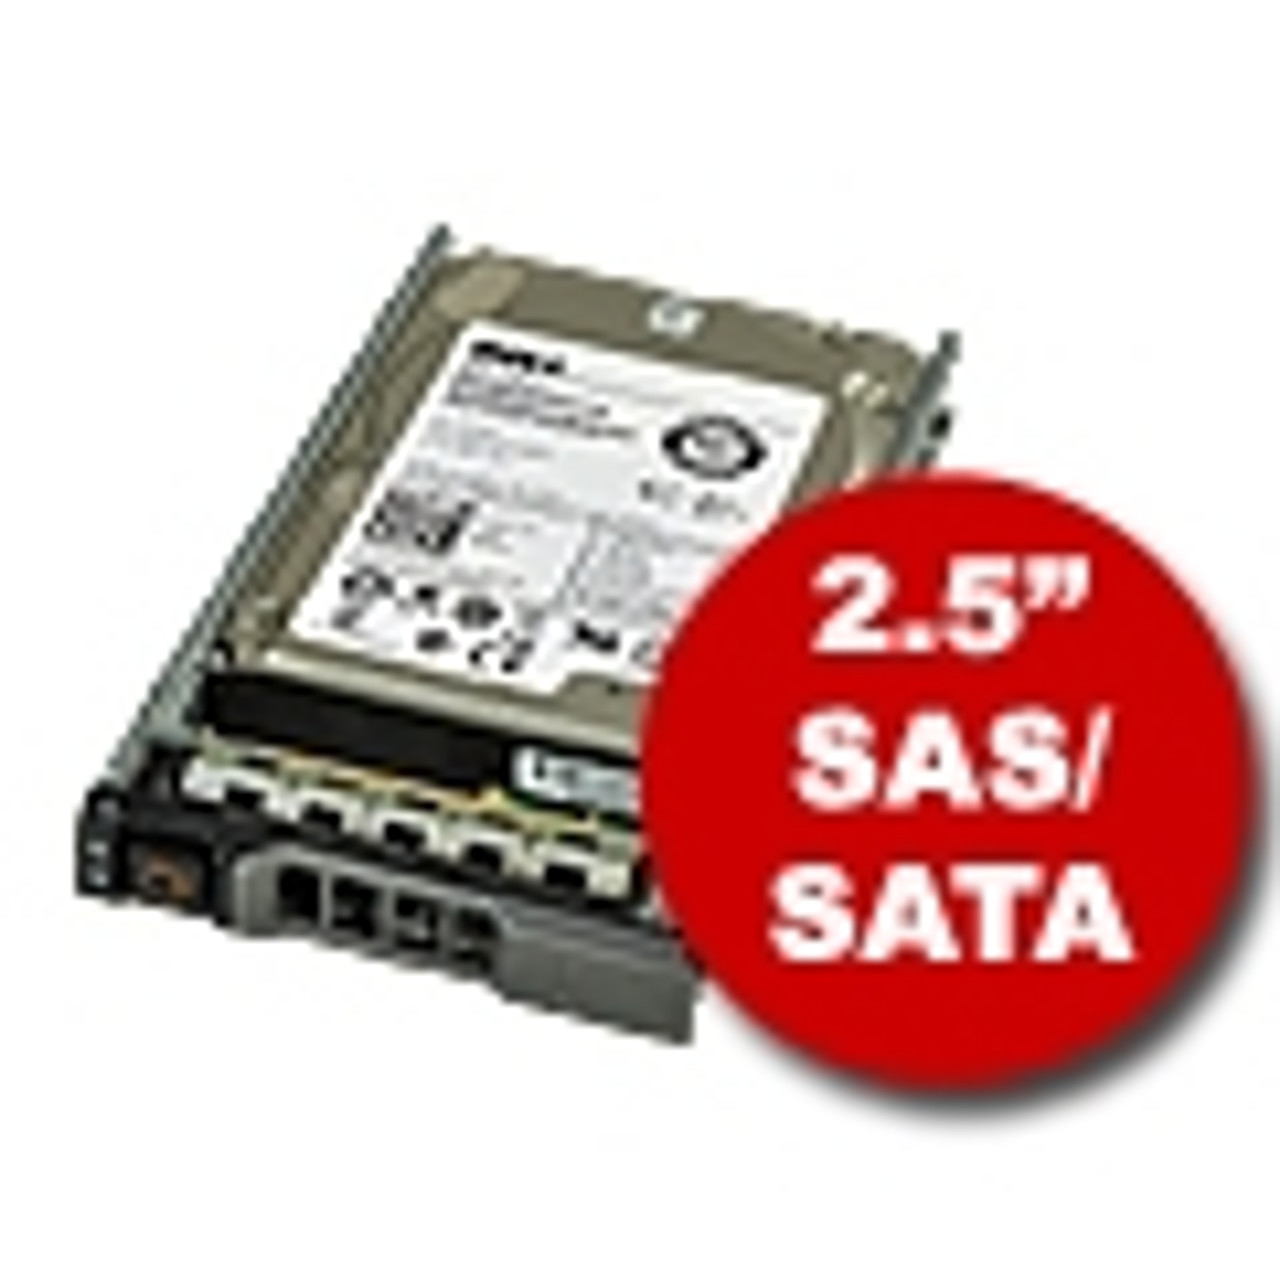 2.5" SAS/SATA Hard Drives & Trays